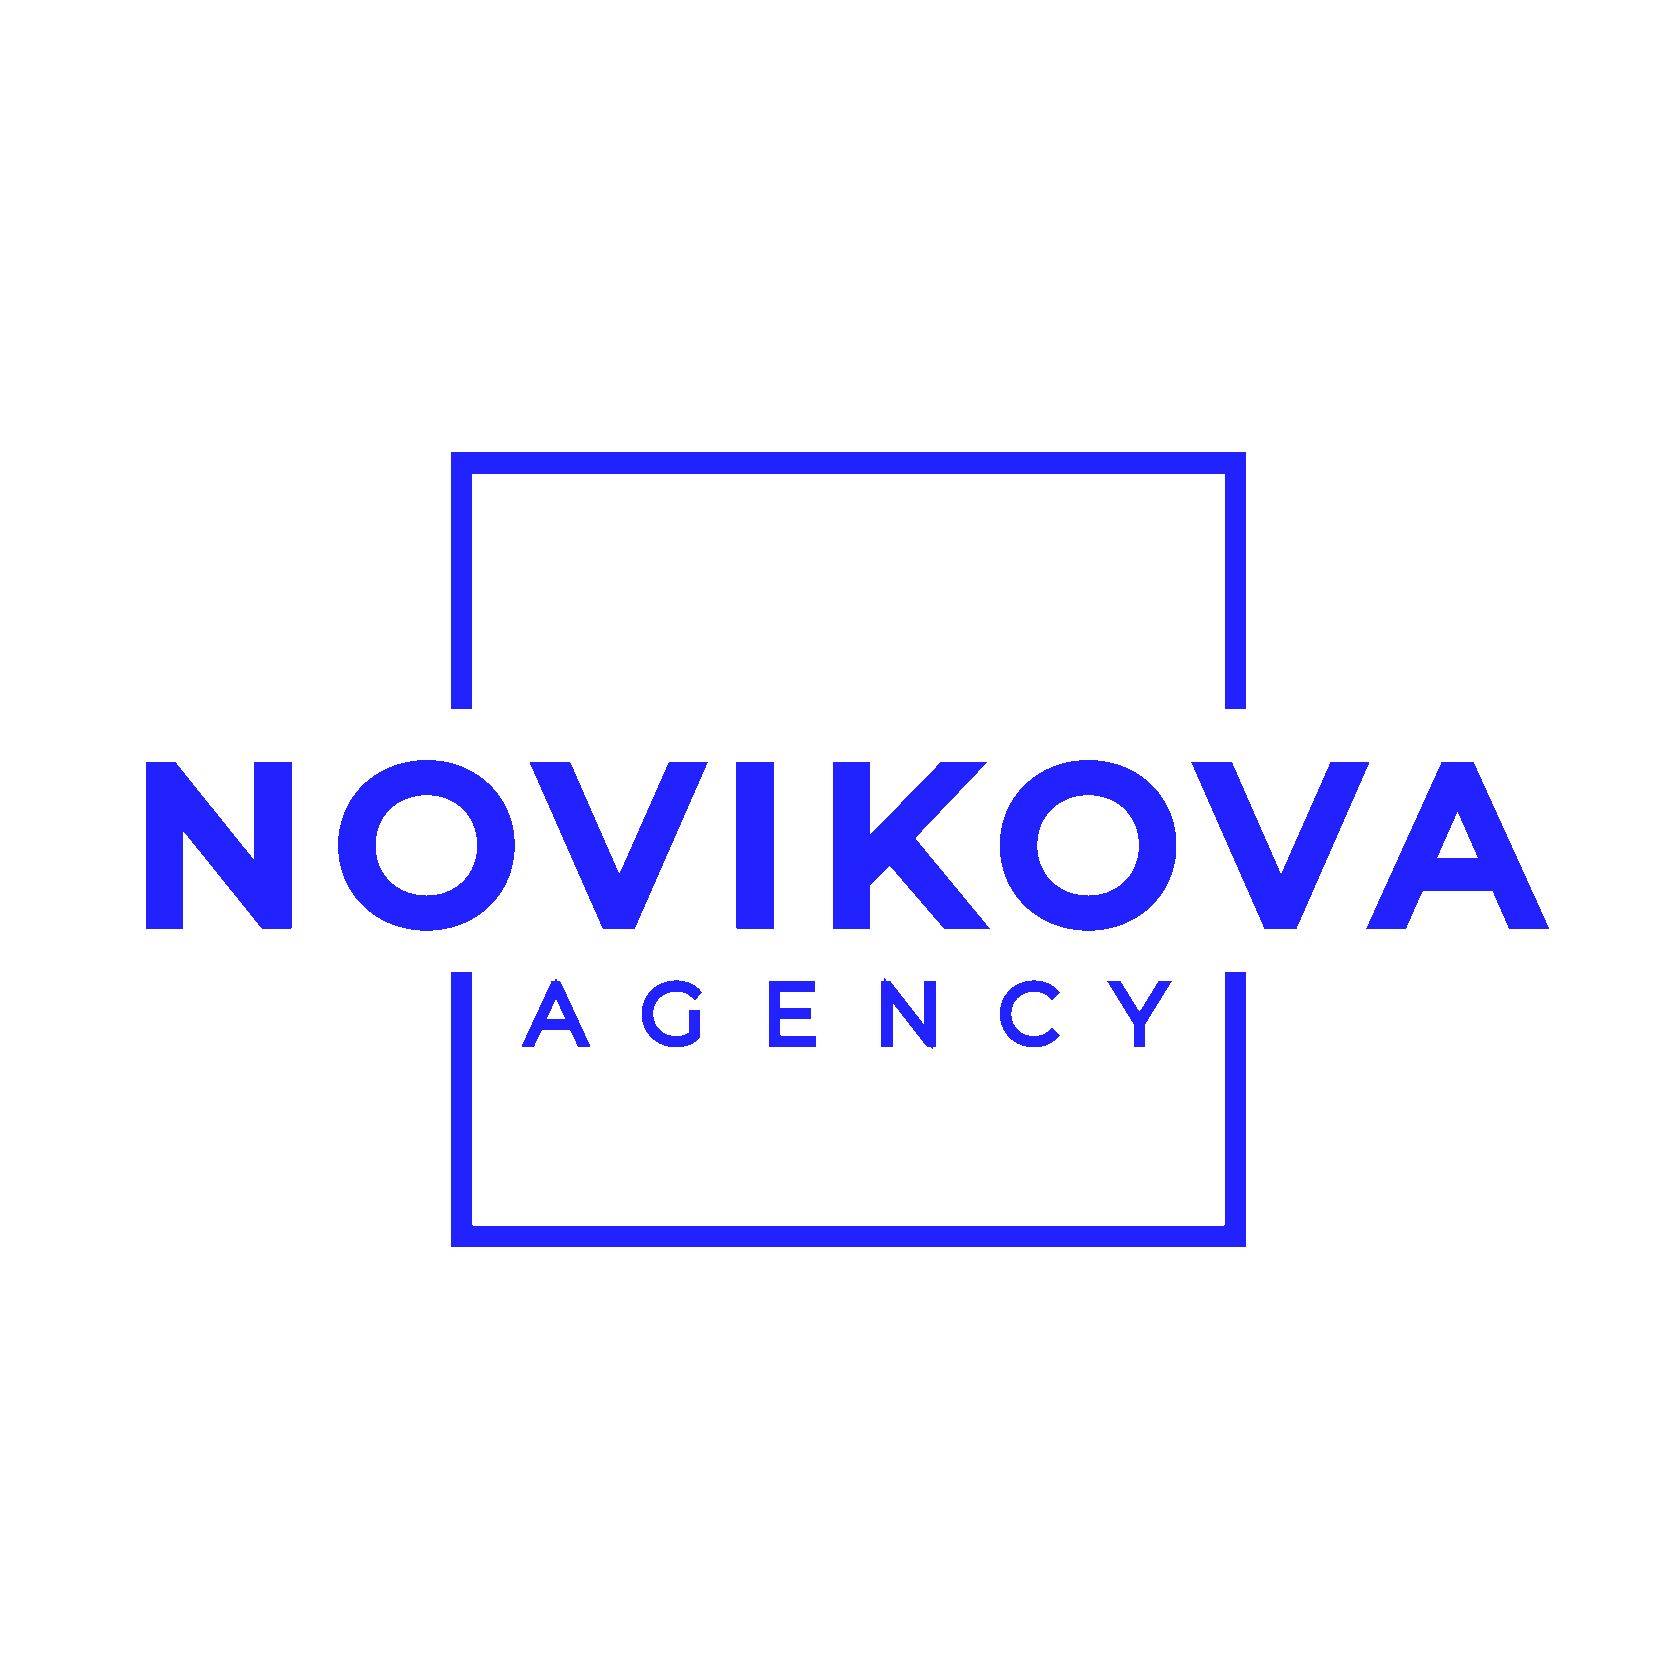 Novikova Agency